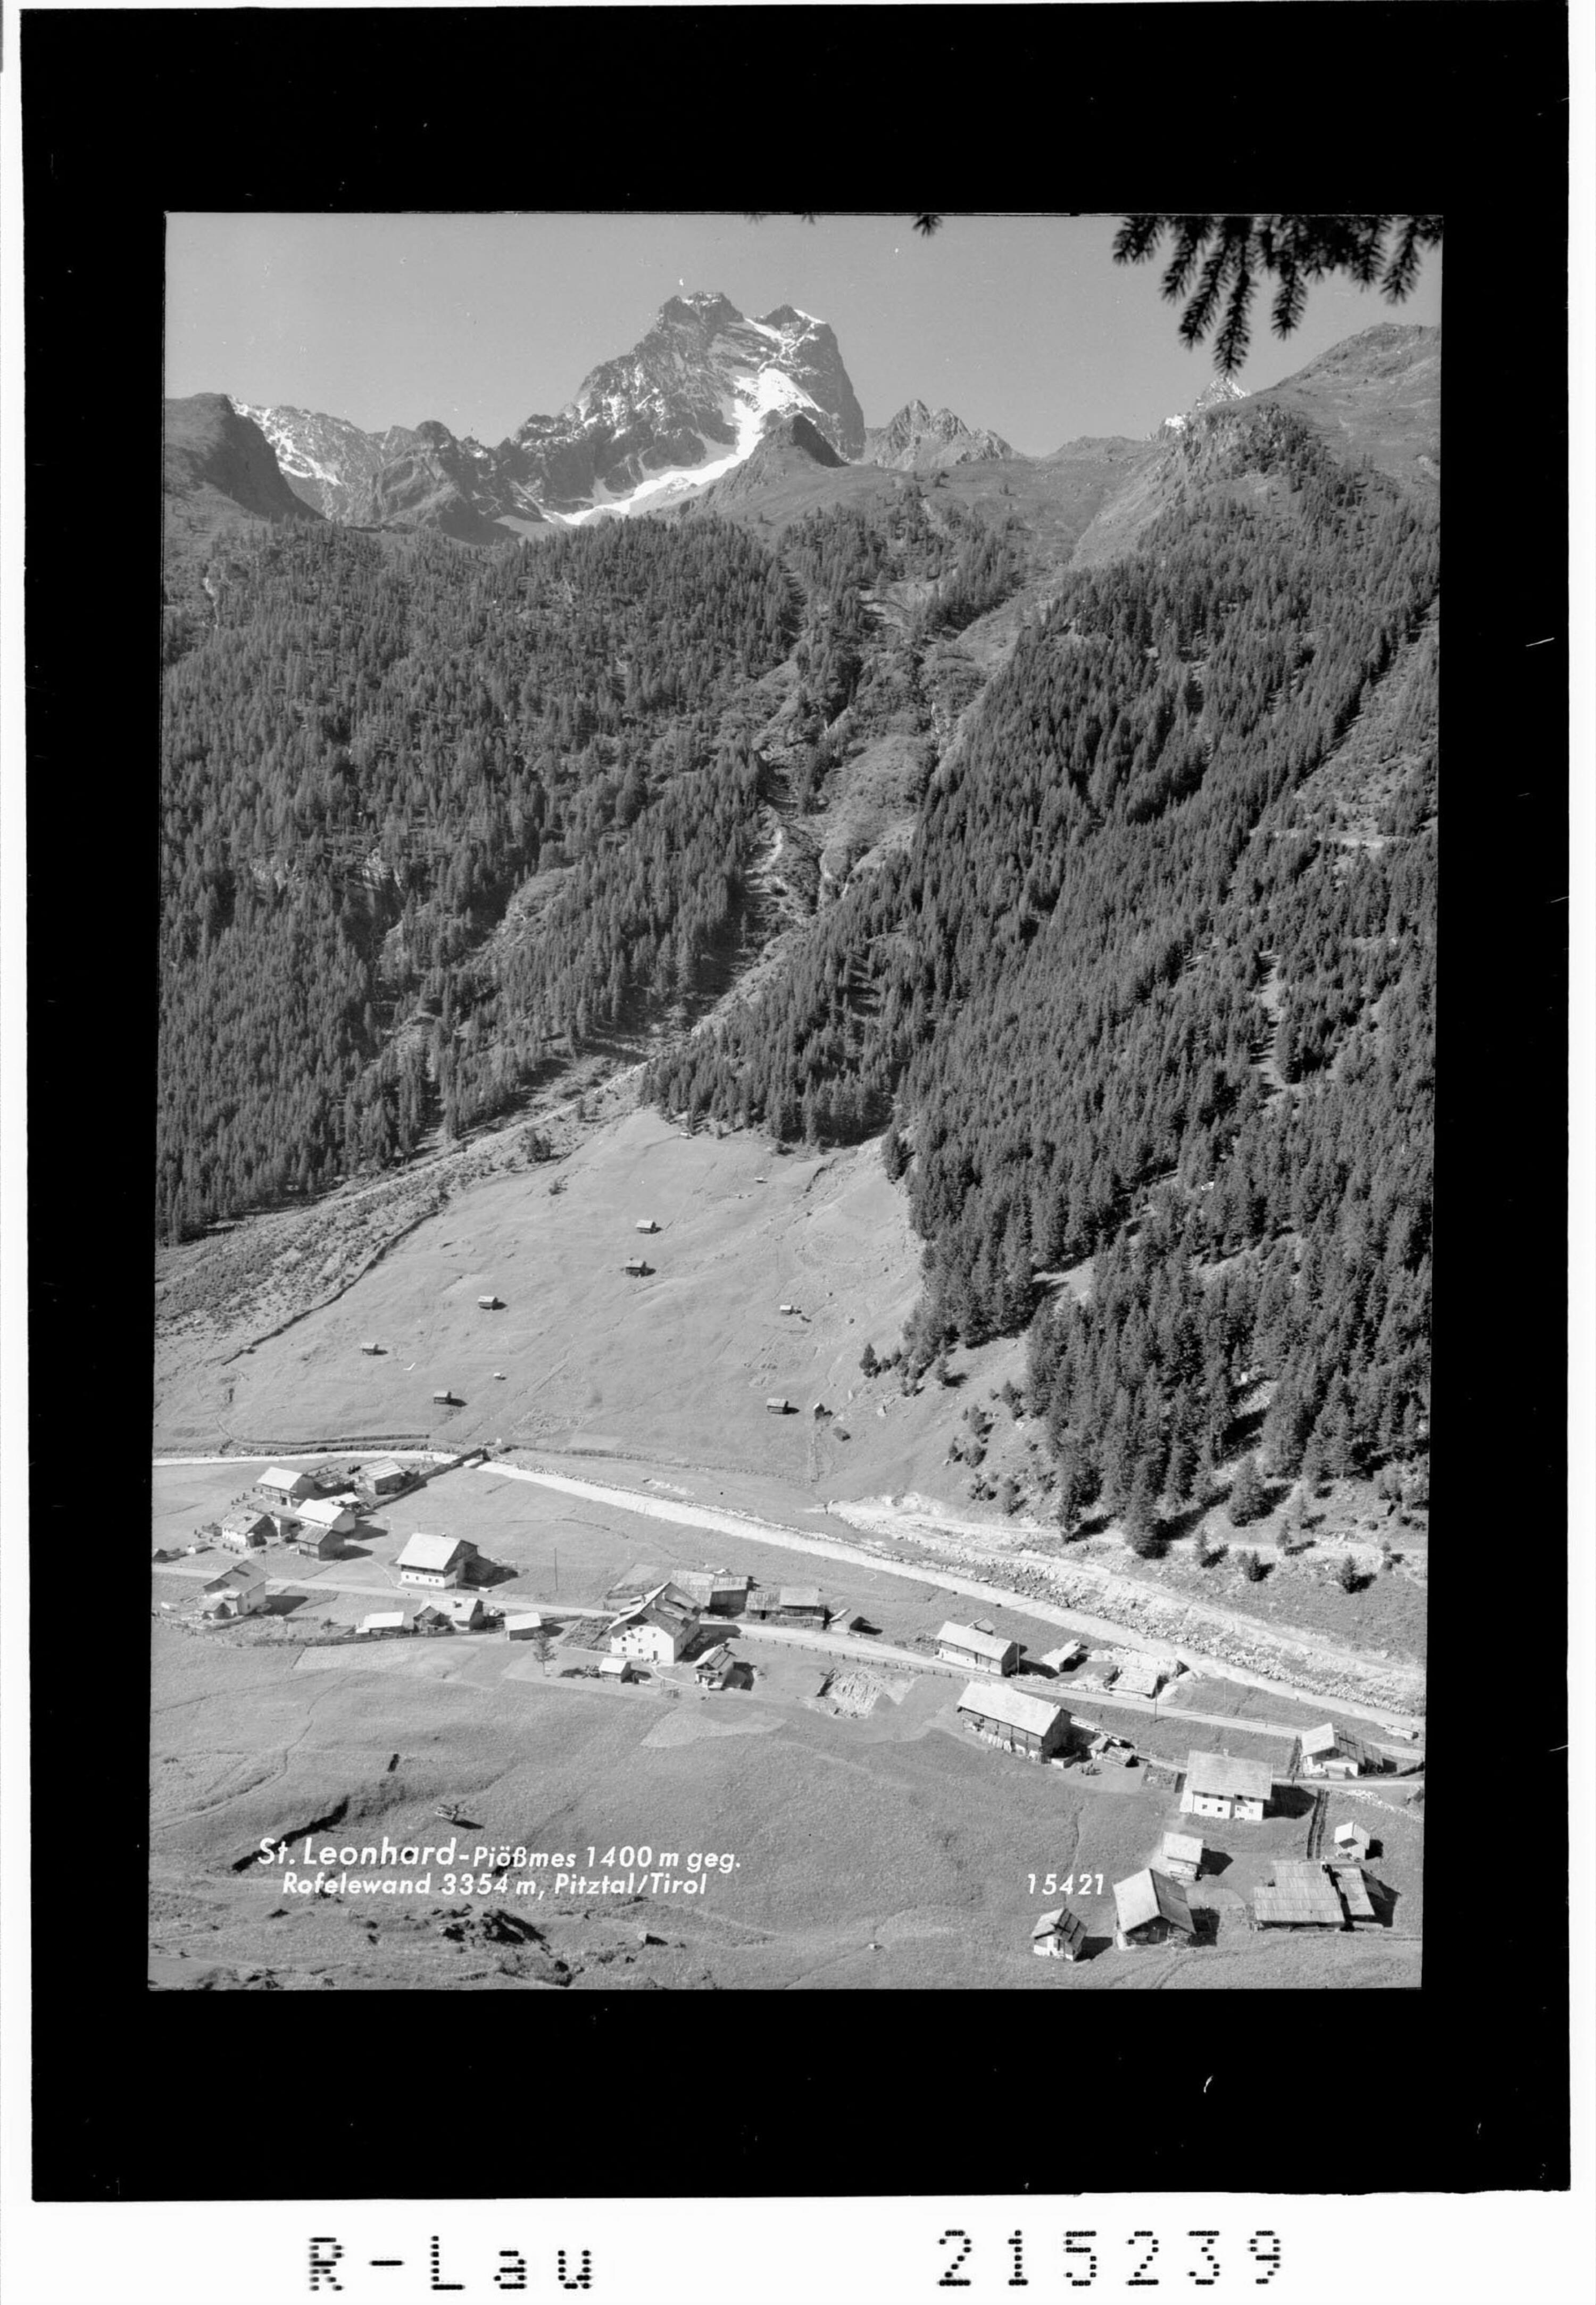 Piössmes 1400 m gegen Rofelewand 3354 m, Pitztal / Tirol></div>


    <hr>
    <div class=